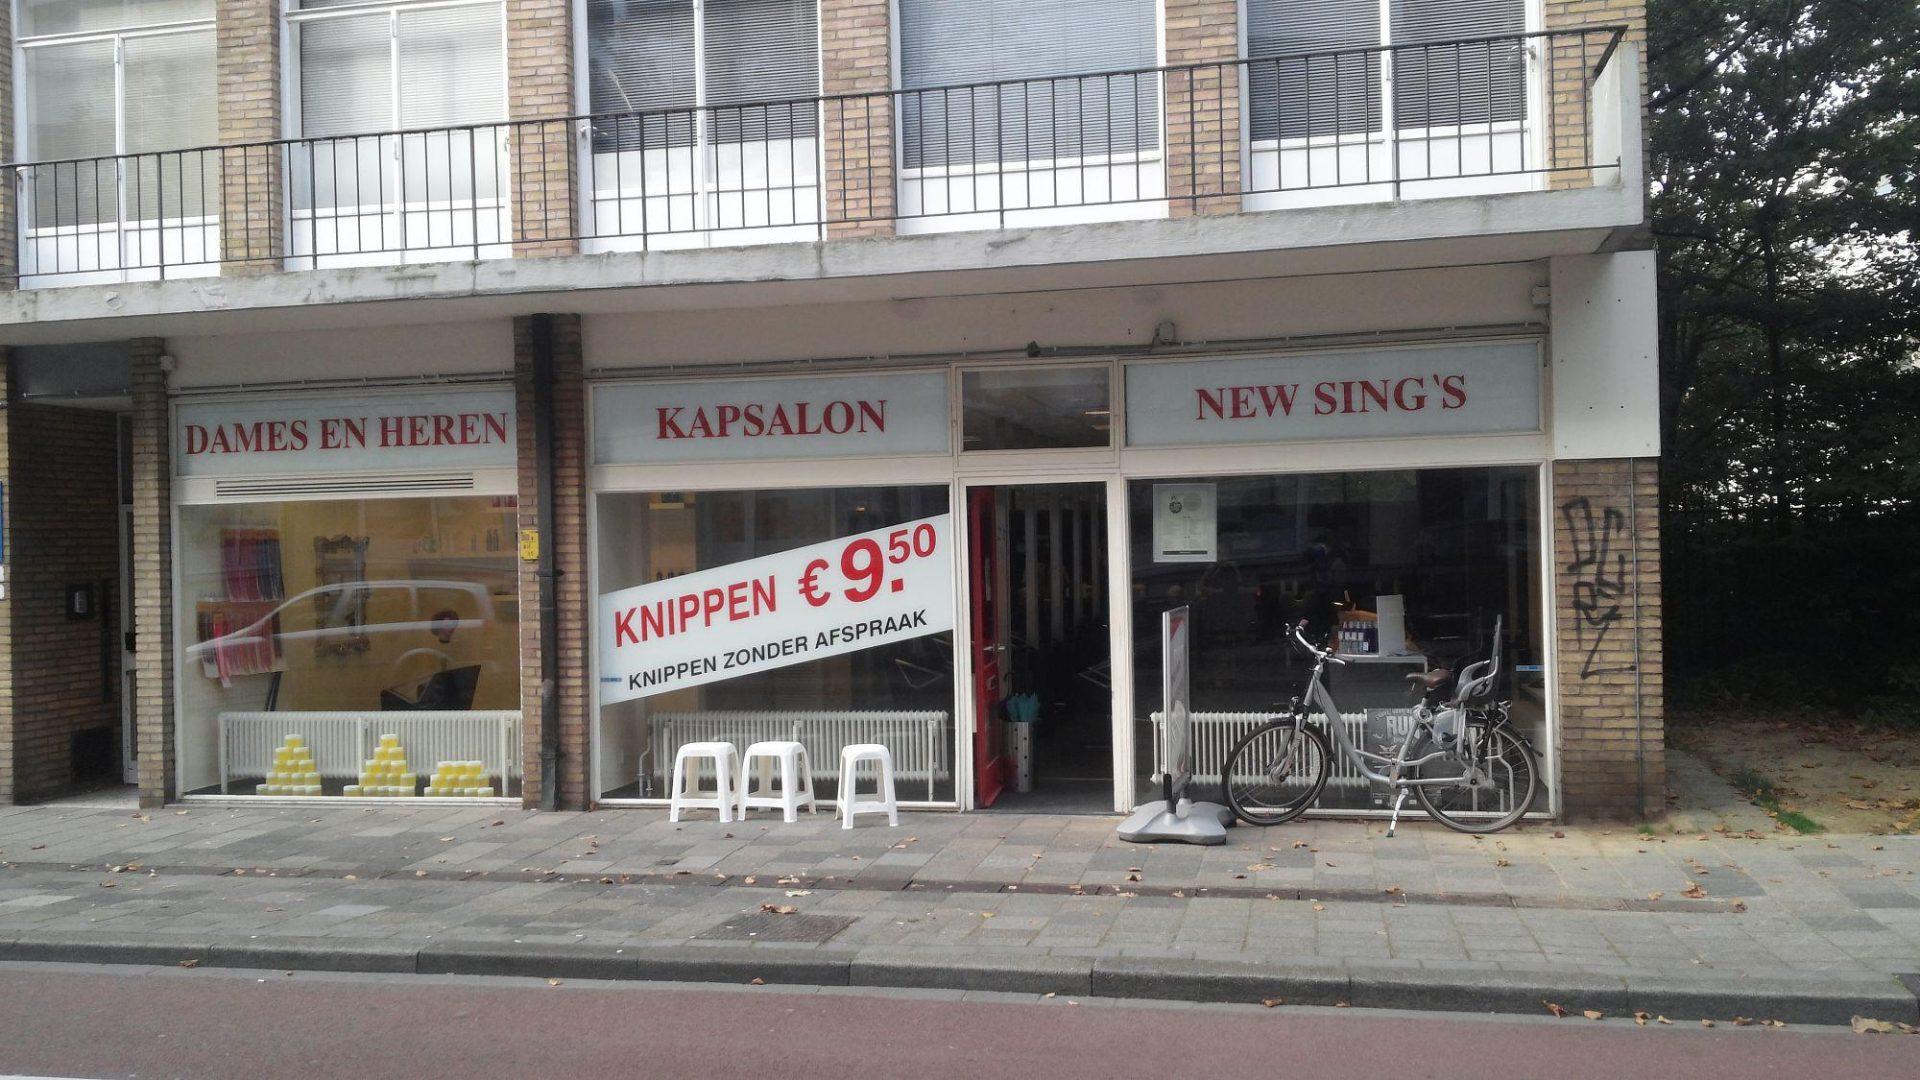 Kapsalon New Sing's